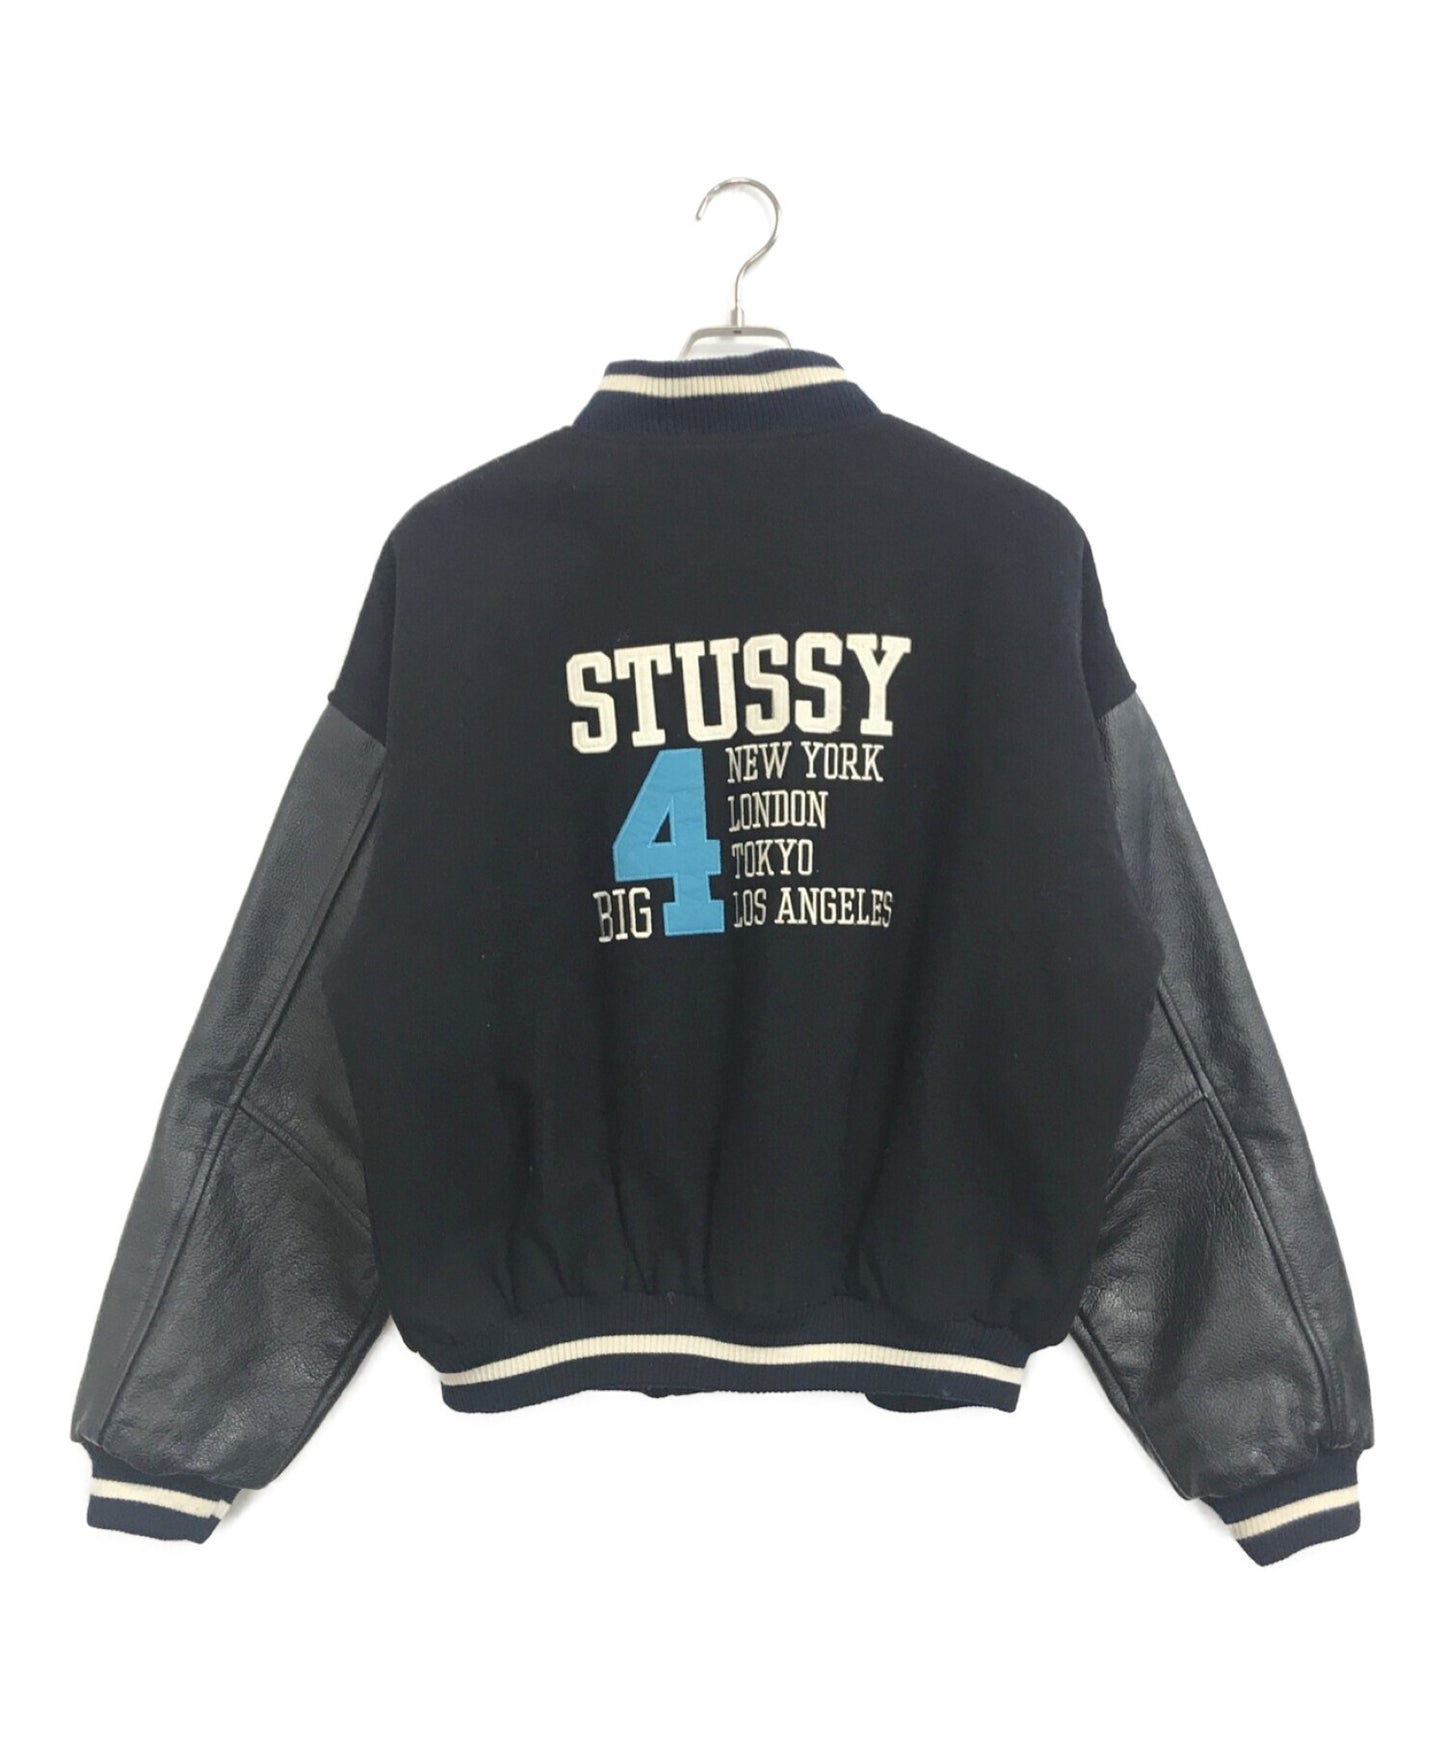 stussy BIG4 stadium jacket | Archive Factory